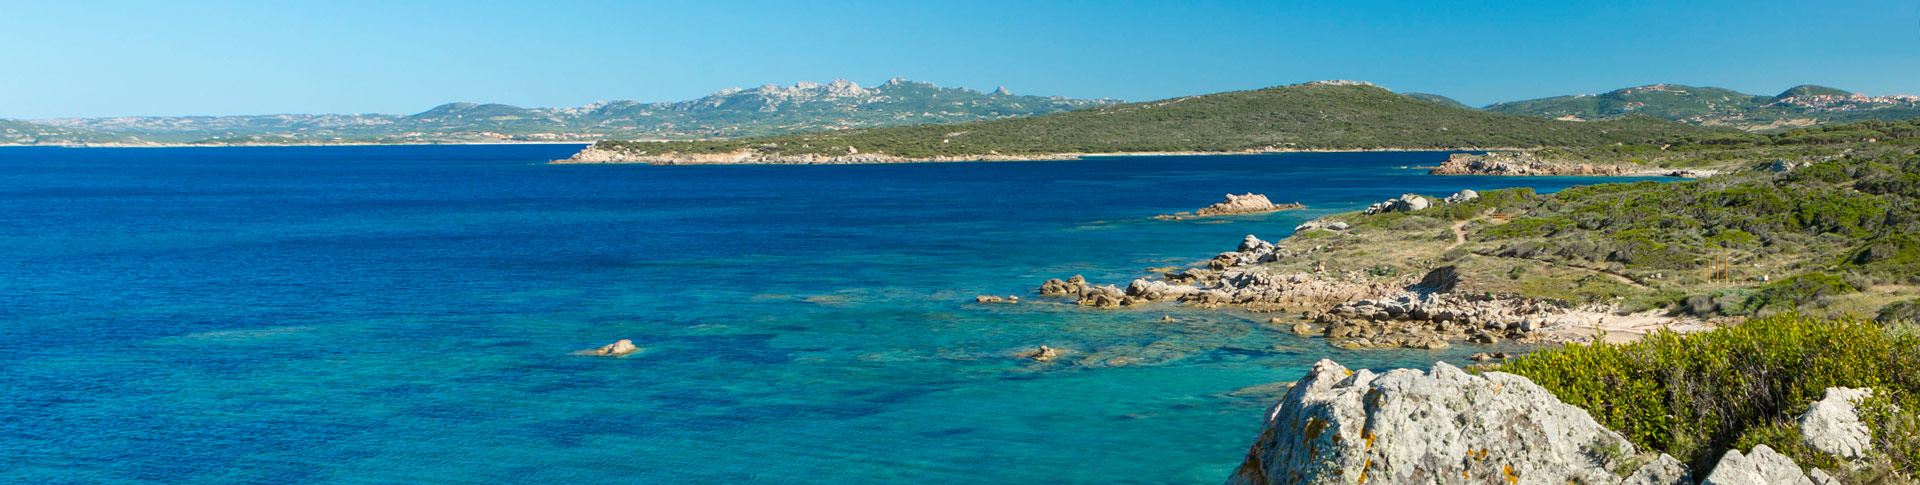 La Licciola nella classifica delle migliori 50 spiagge del Mediterraneo